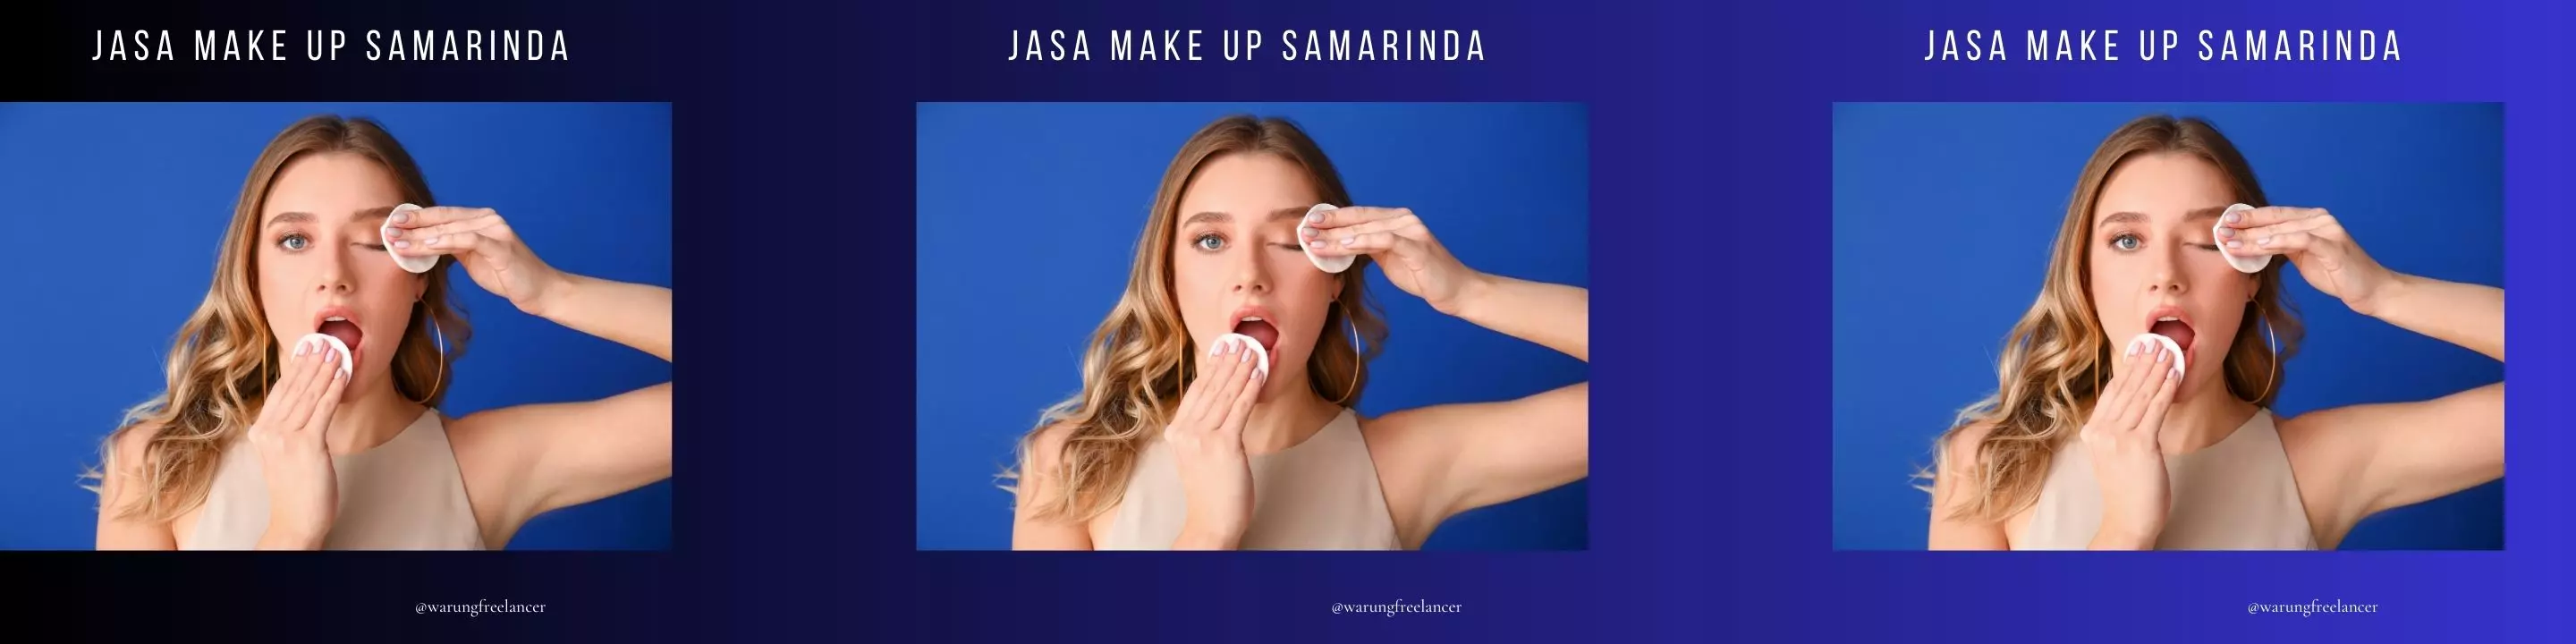 Jasa Make Up Samarinda